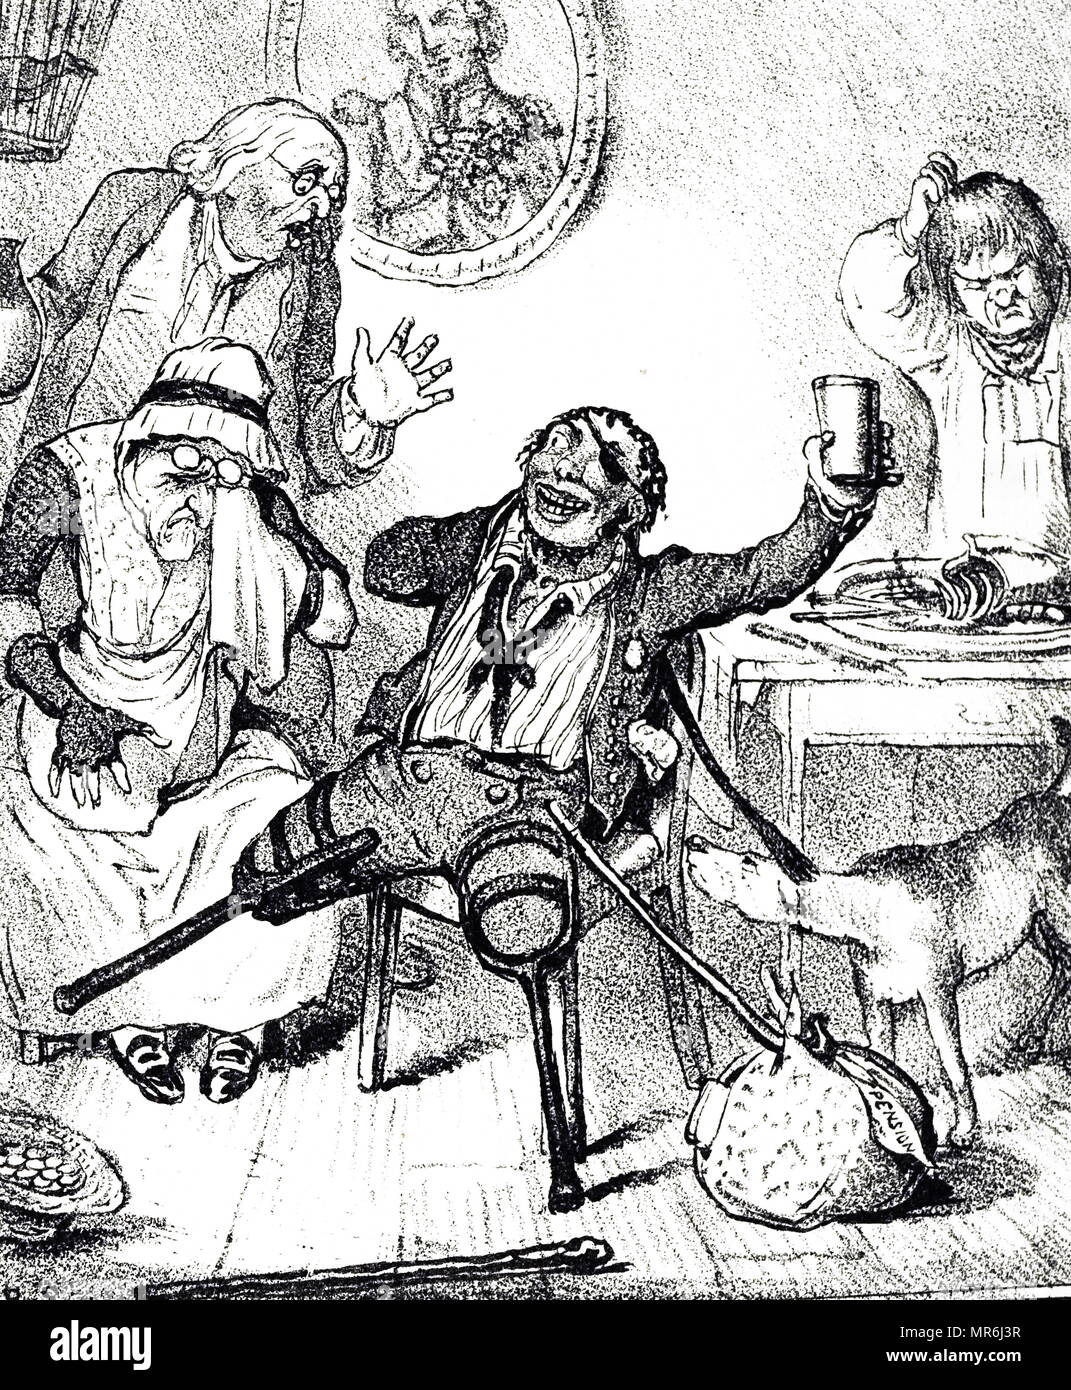 Cartoon kommentierte das Schicksal von England's Söhne, die durch Service während der Napoleonischen Kriege lebte. Illustriert von Robert Seymour (1798-1836) ein britischer Illustrator. Vom 19. Jahrhundert Stockfoto